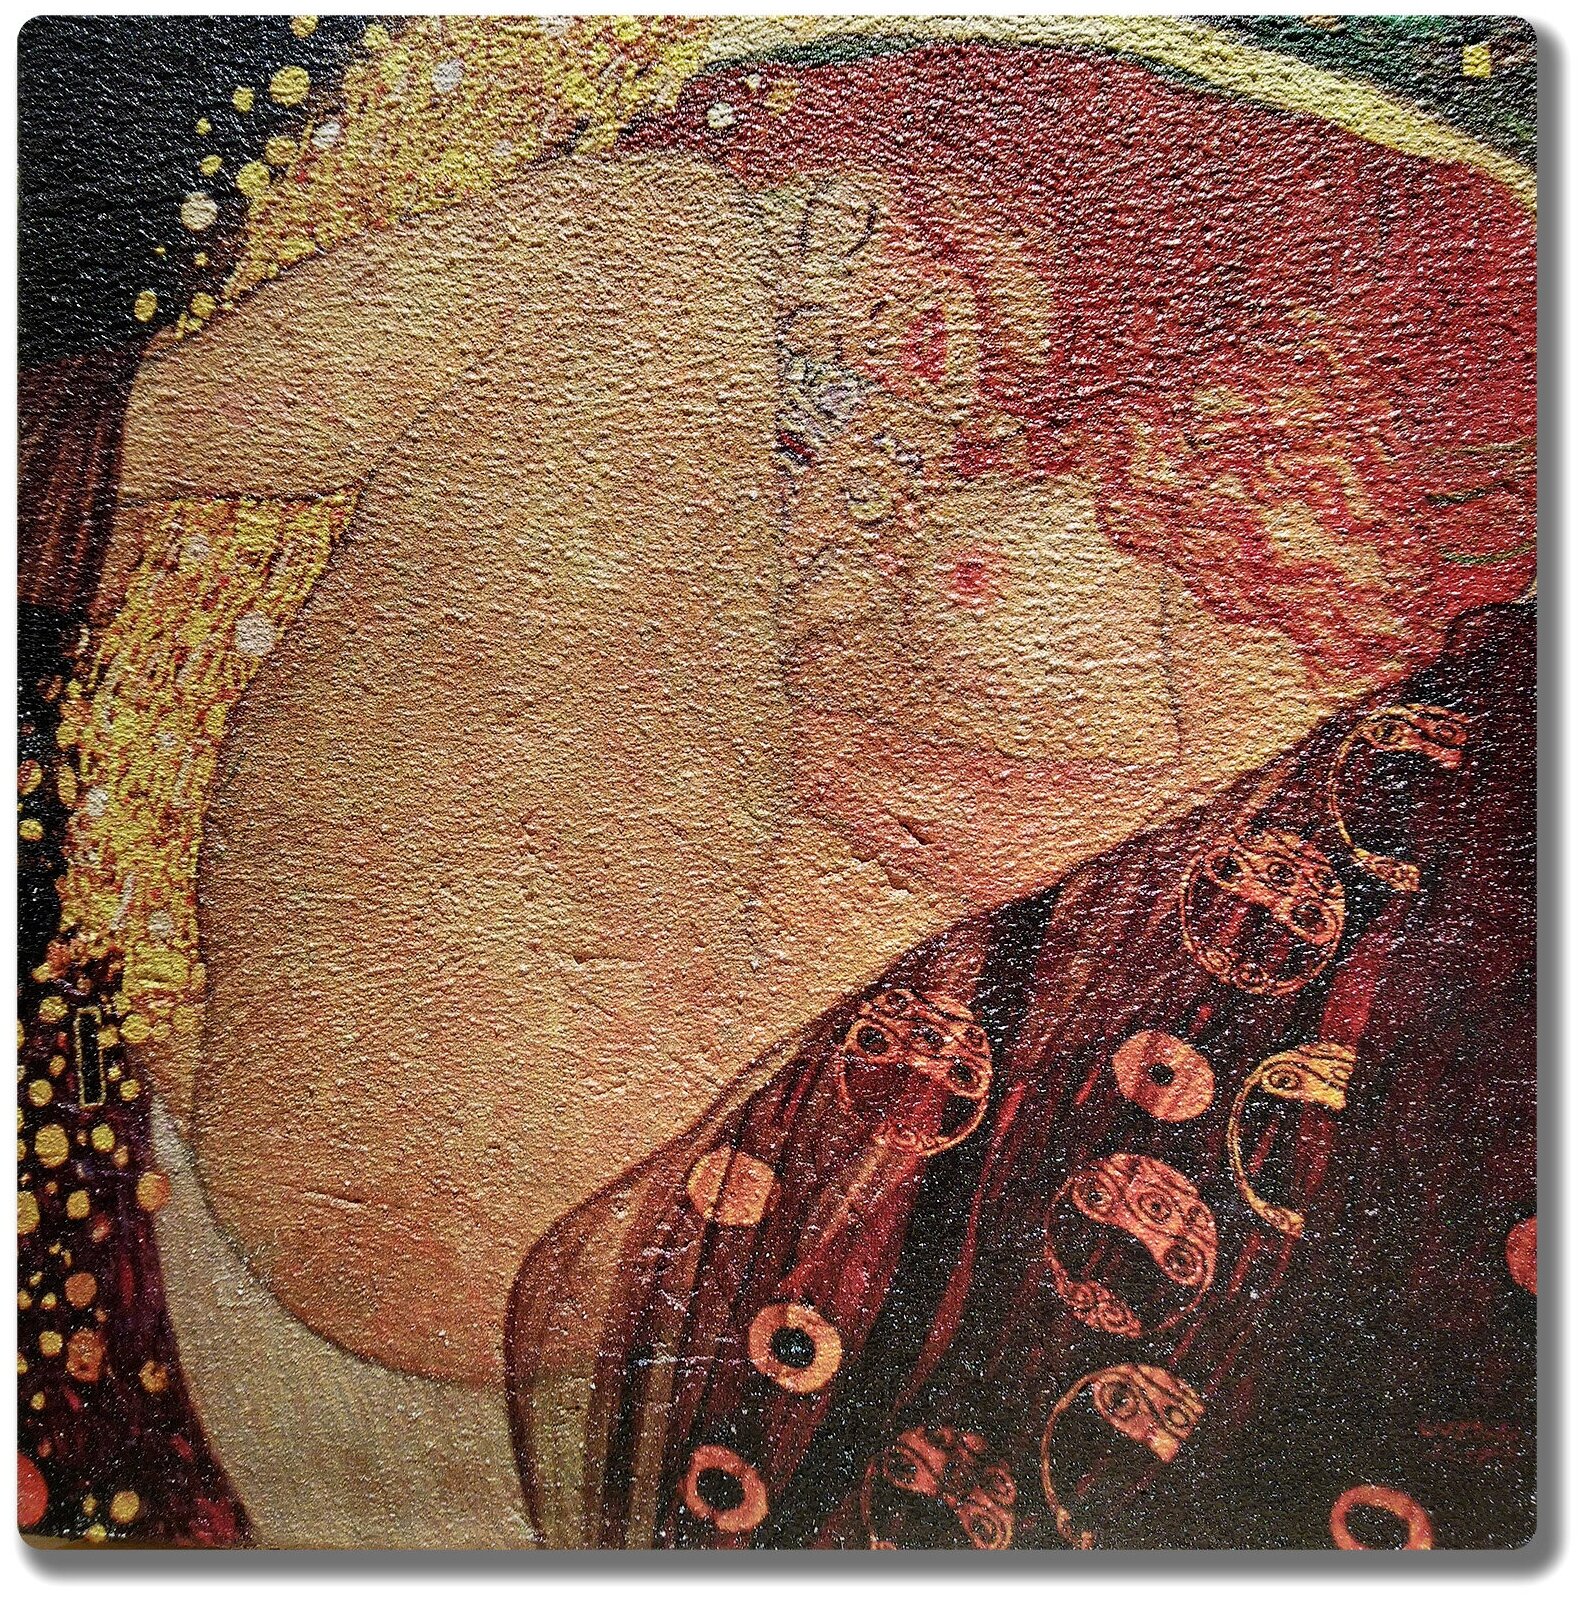 Репродукция картины Густава Климта "Даная". Интерьерная фреска на доске. 25х25 см